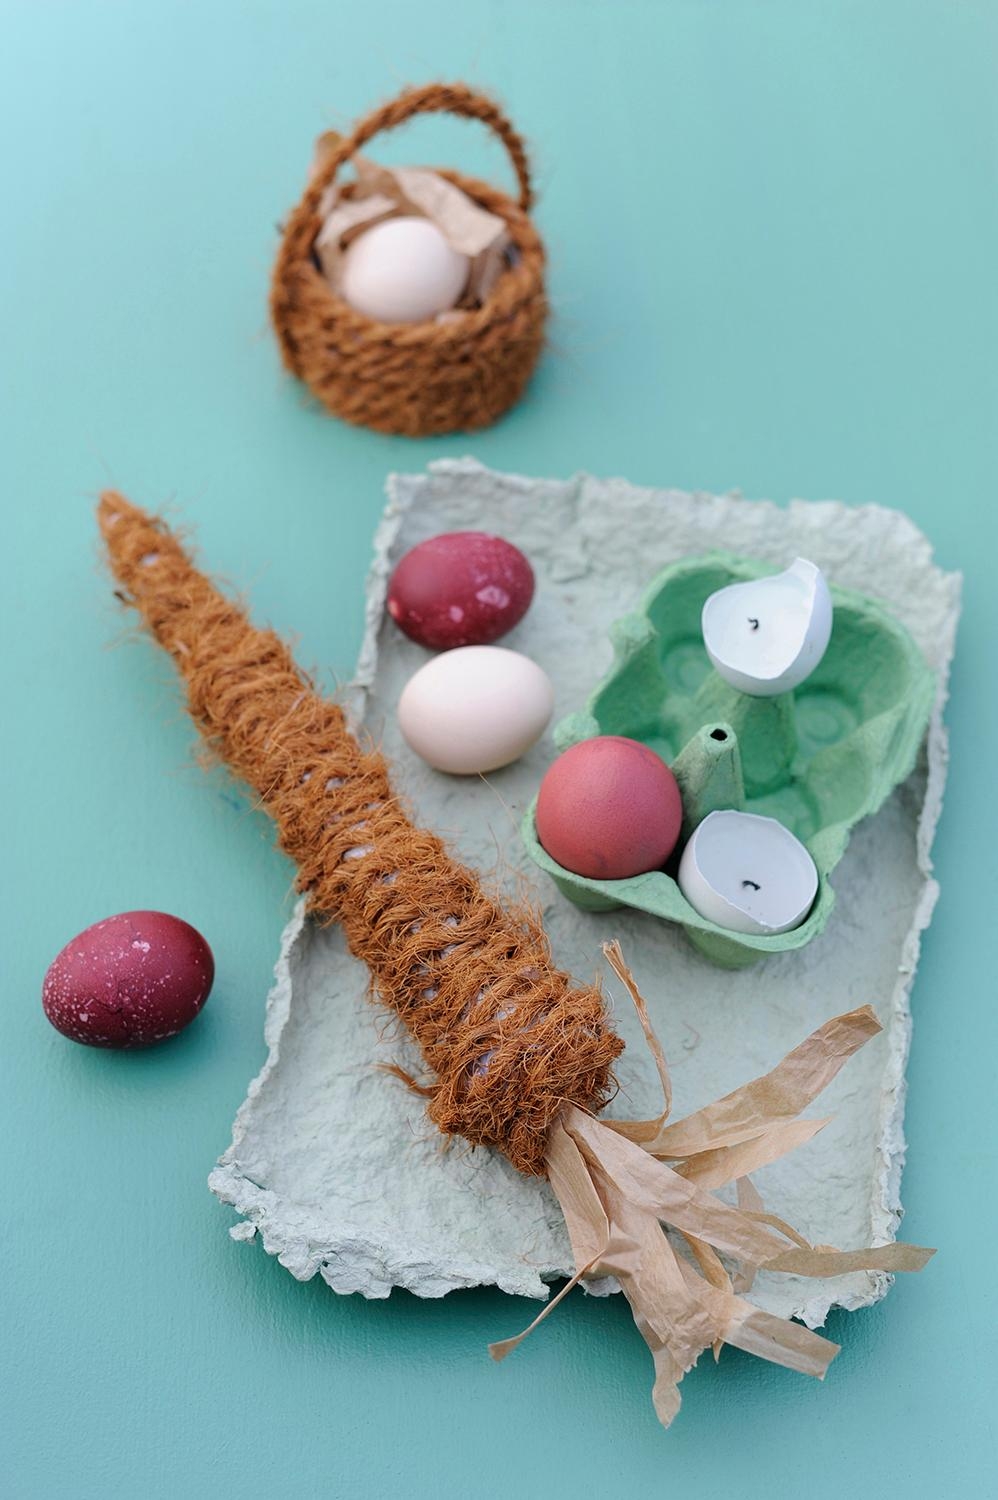 #Tischdeko mit Eierschalenkerzen
und einer Möhre aus Zeitung und Sisal...

#diy #Ostereier #Ostern #couchliebt 